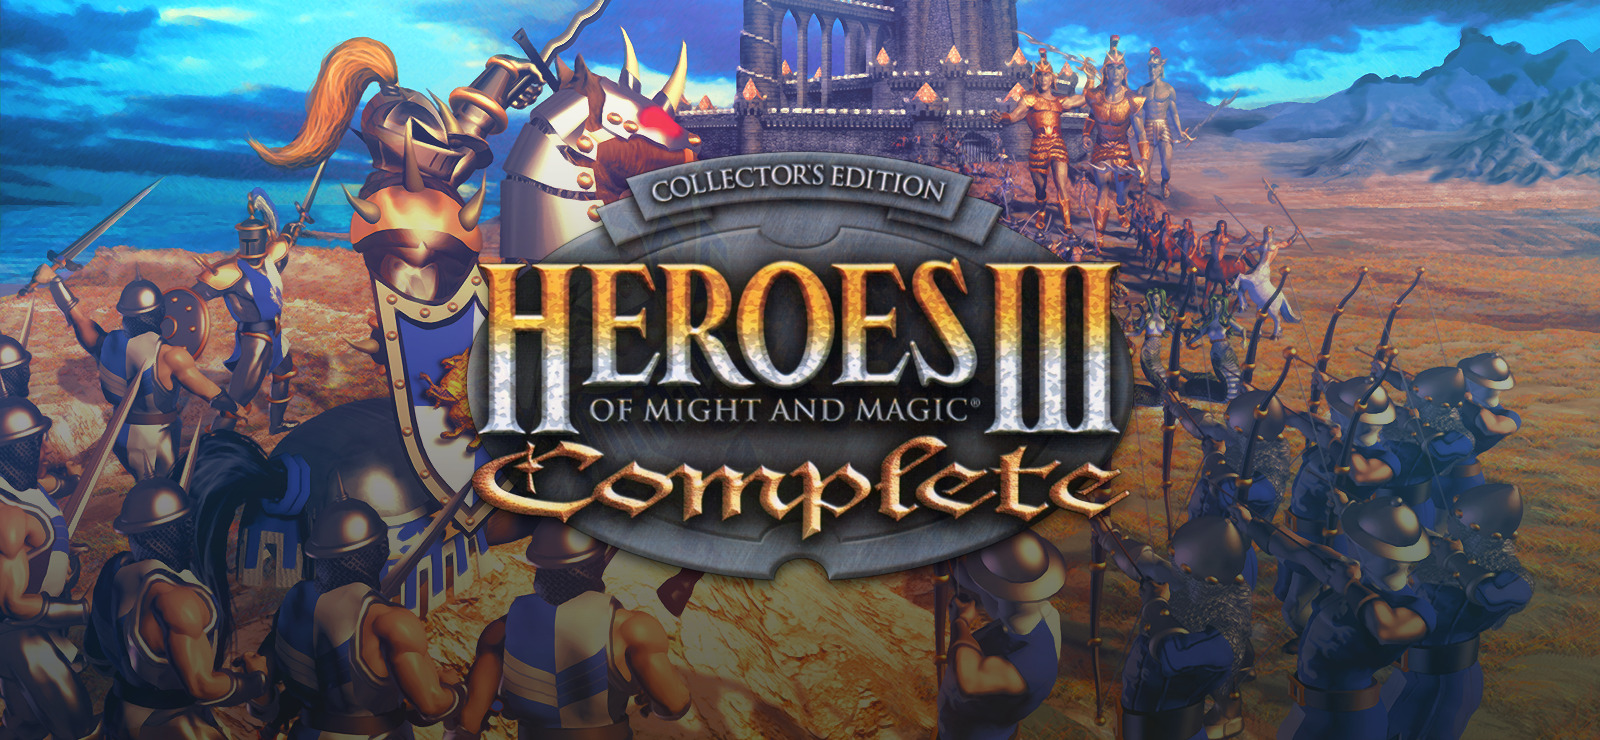 heroes iii online download